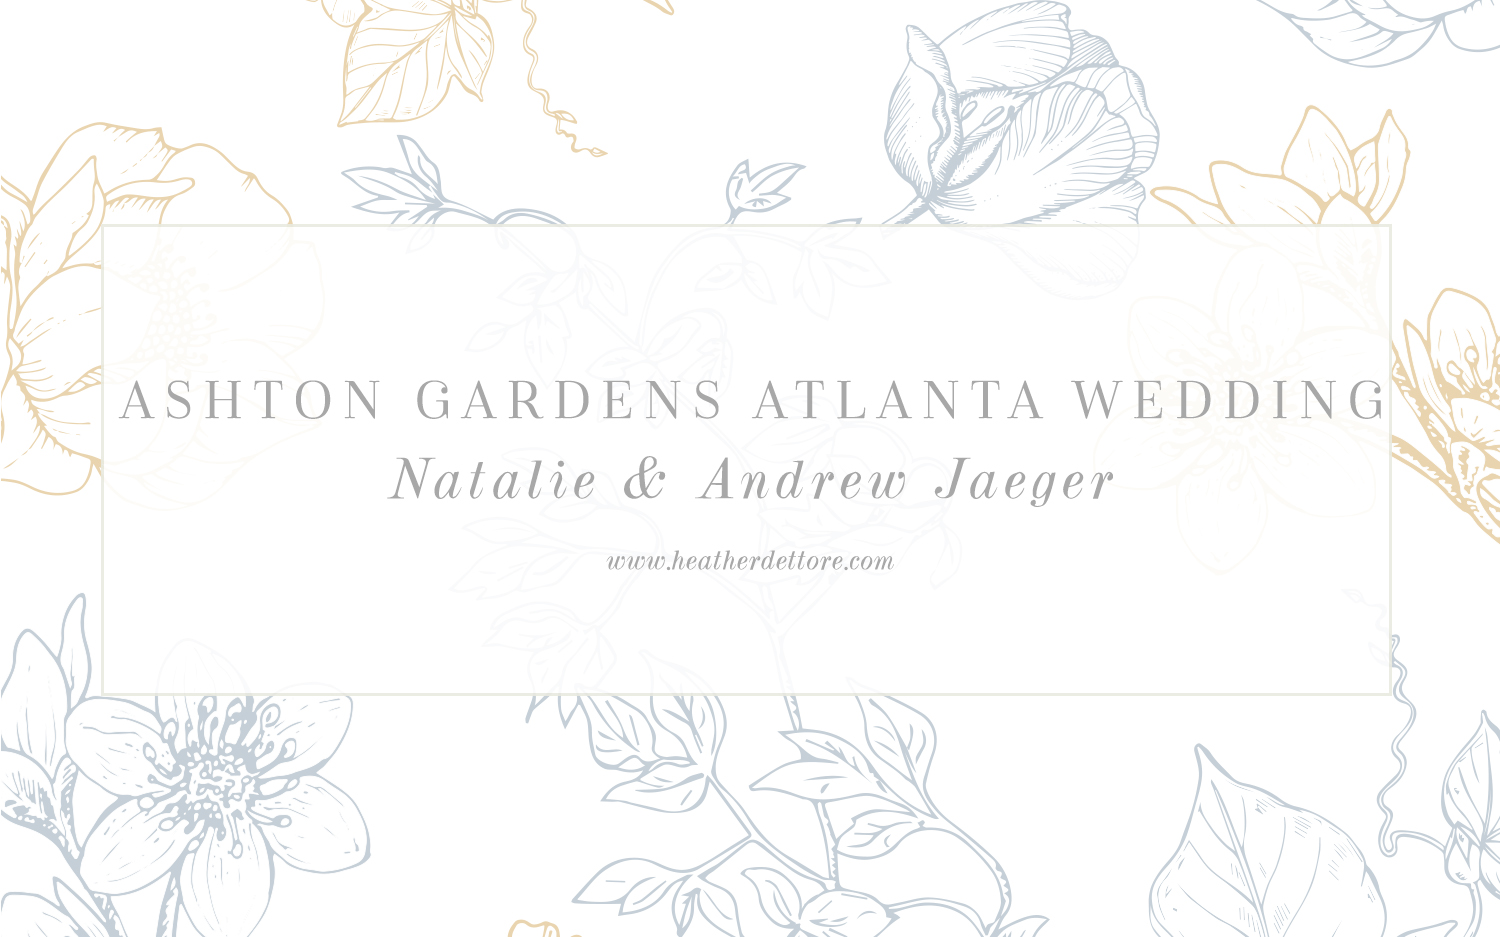 Atlanta_Georgia_Wedding_Photographer_Spring_Blue_Blog_Inspiration_Ashton Gardens Venue_Wedding Party_Ceremony_Photographer_Blog